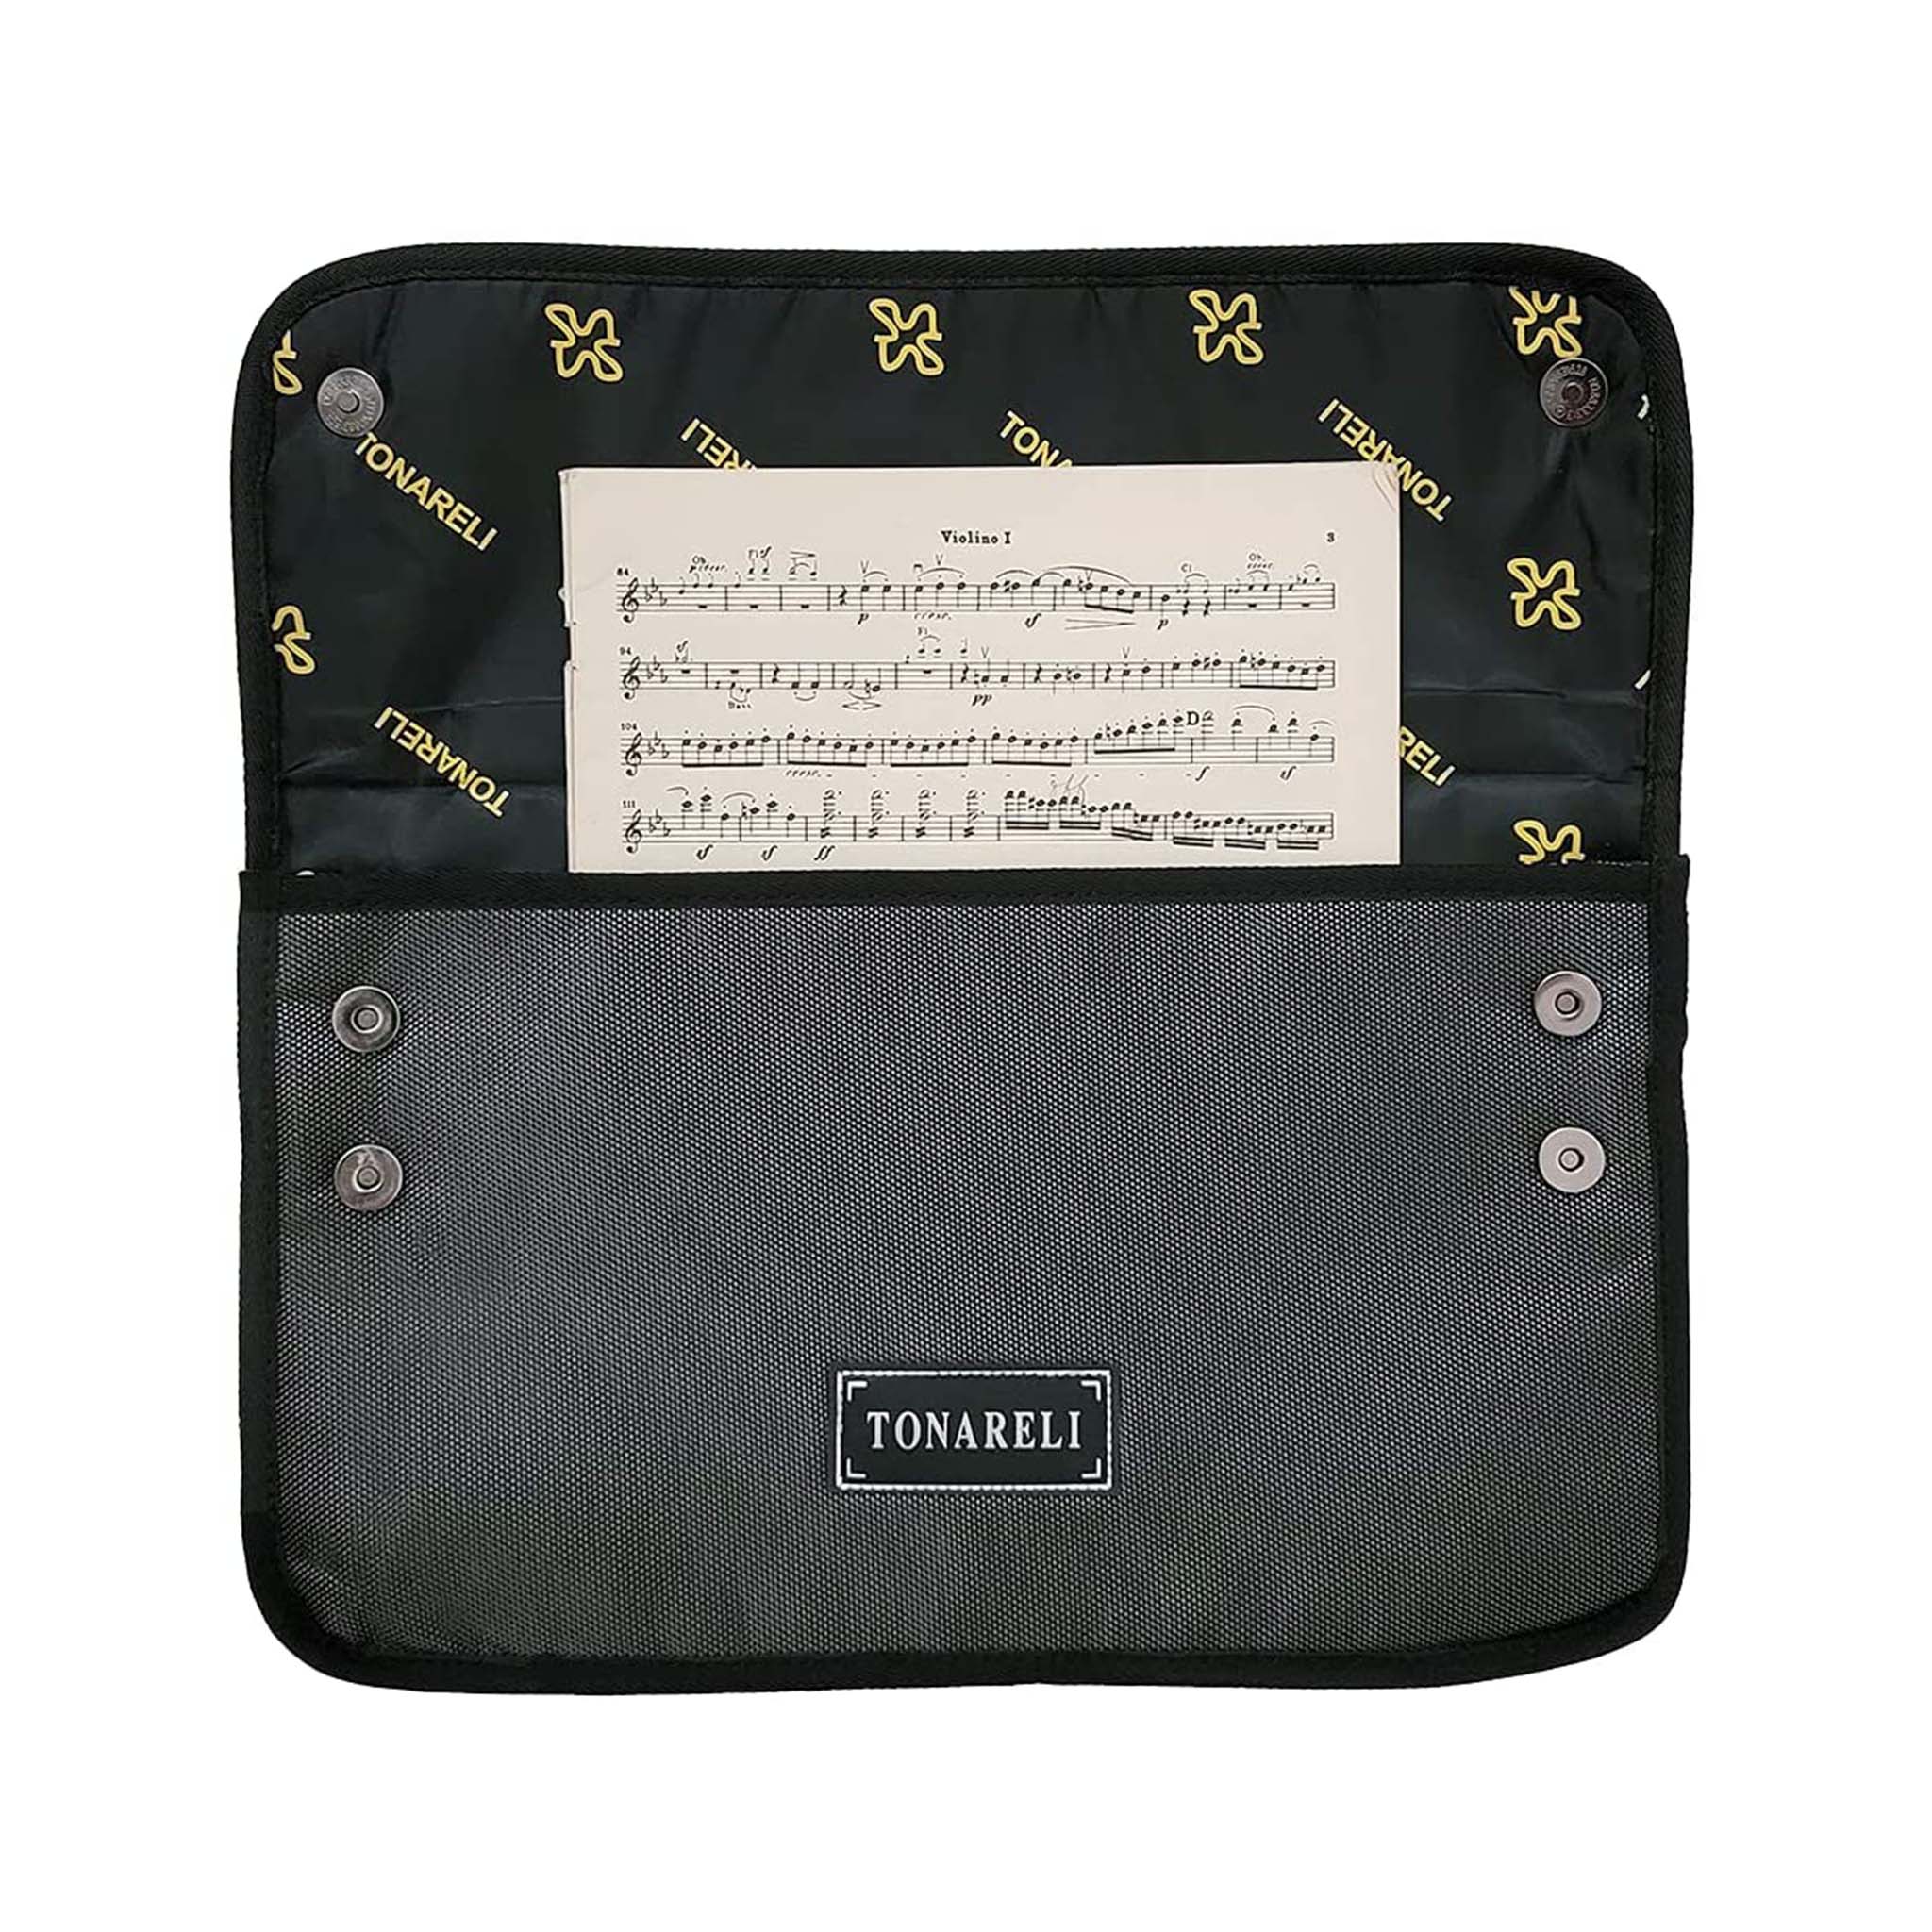 Tonareli Attachable Music Bag for Violin/Viola Case